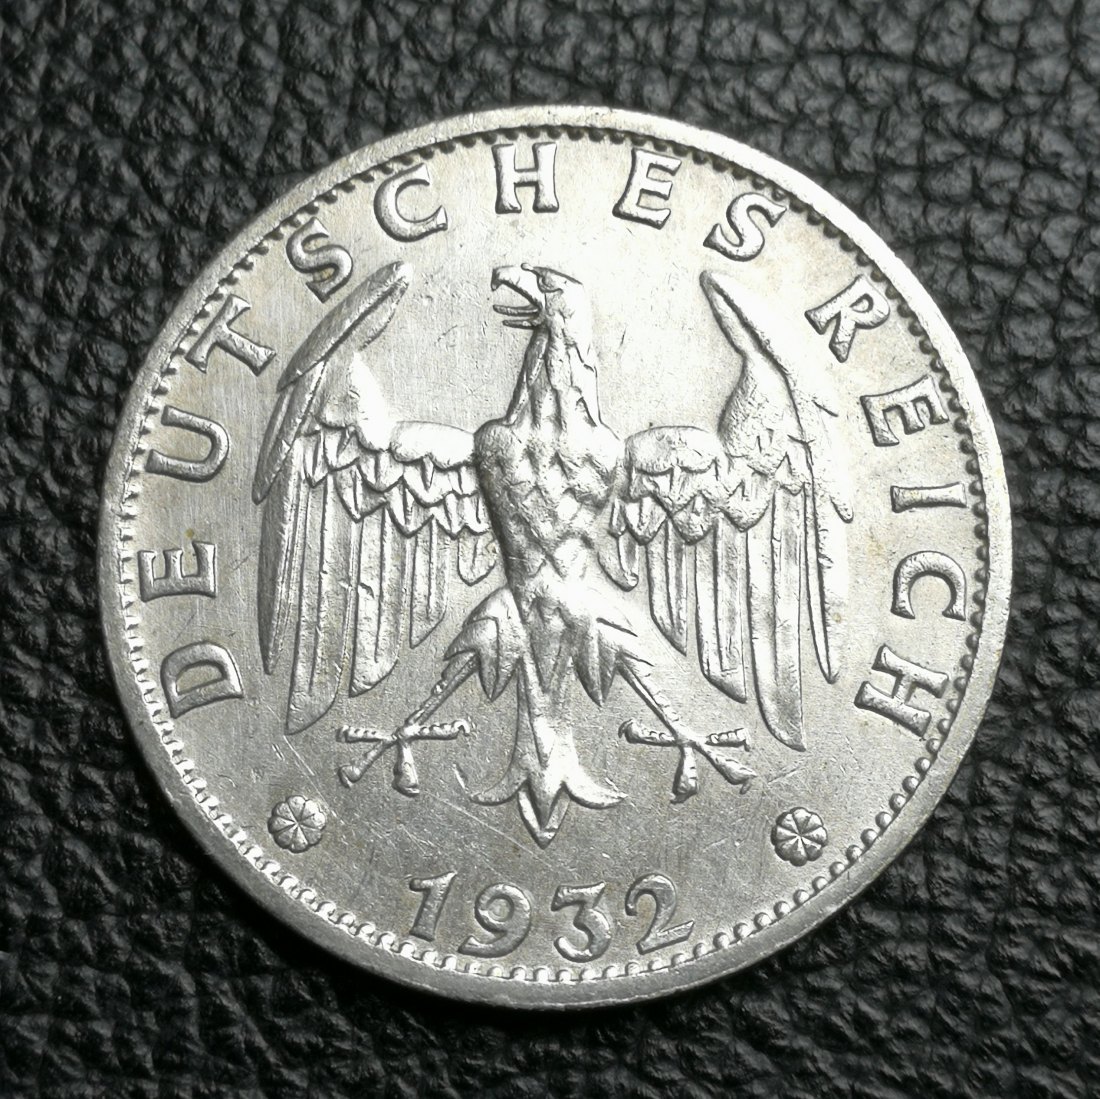  3 Reichsmark 1932 F Weimarer Republik Jaeger 349 sehr selten XXL Bilder Top Erhaltung   